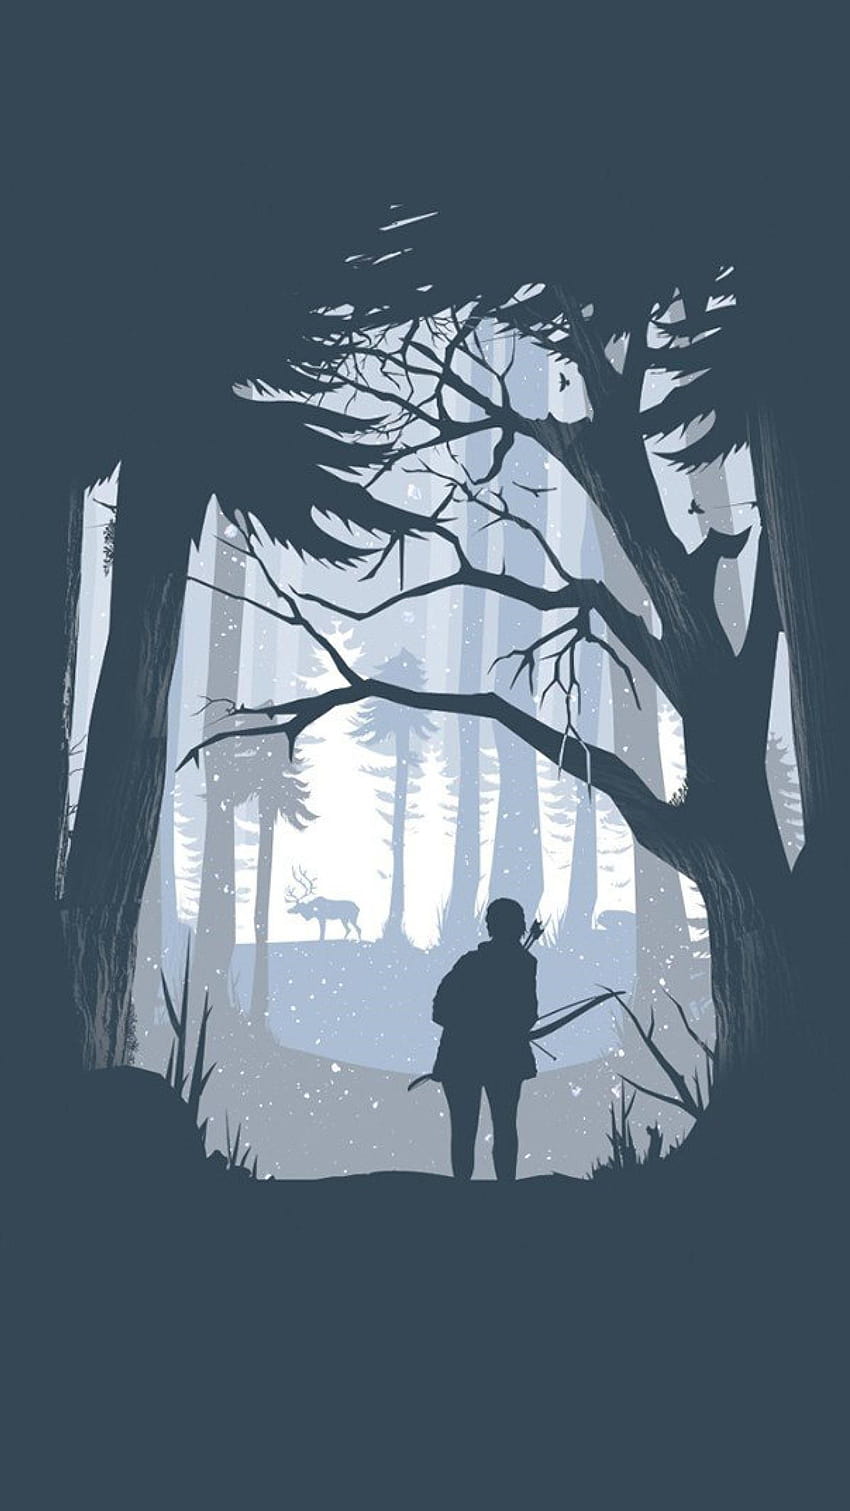 Misc Last Of Us Poster, yang terakhir dari kita iphone wallpaper ponsel HD